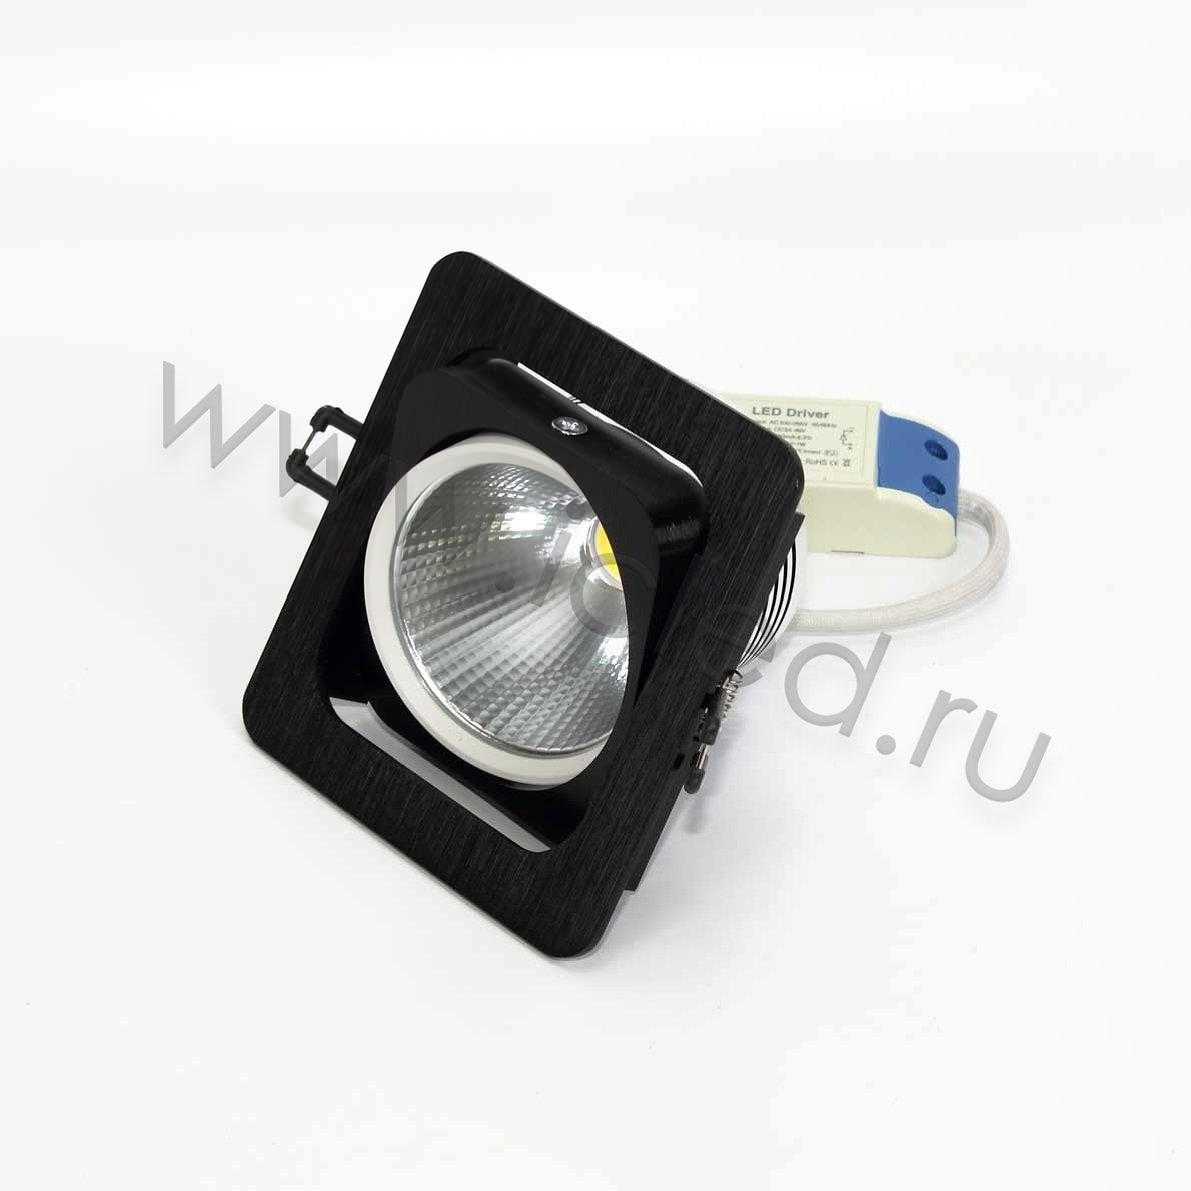 Светодиодные светильники Светодиодный светильник встраиваемый 120.1 series black housing BW14 (10W,220V,day white)